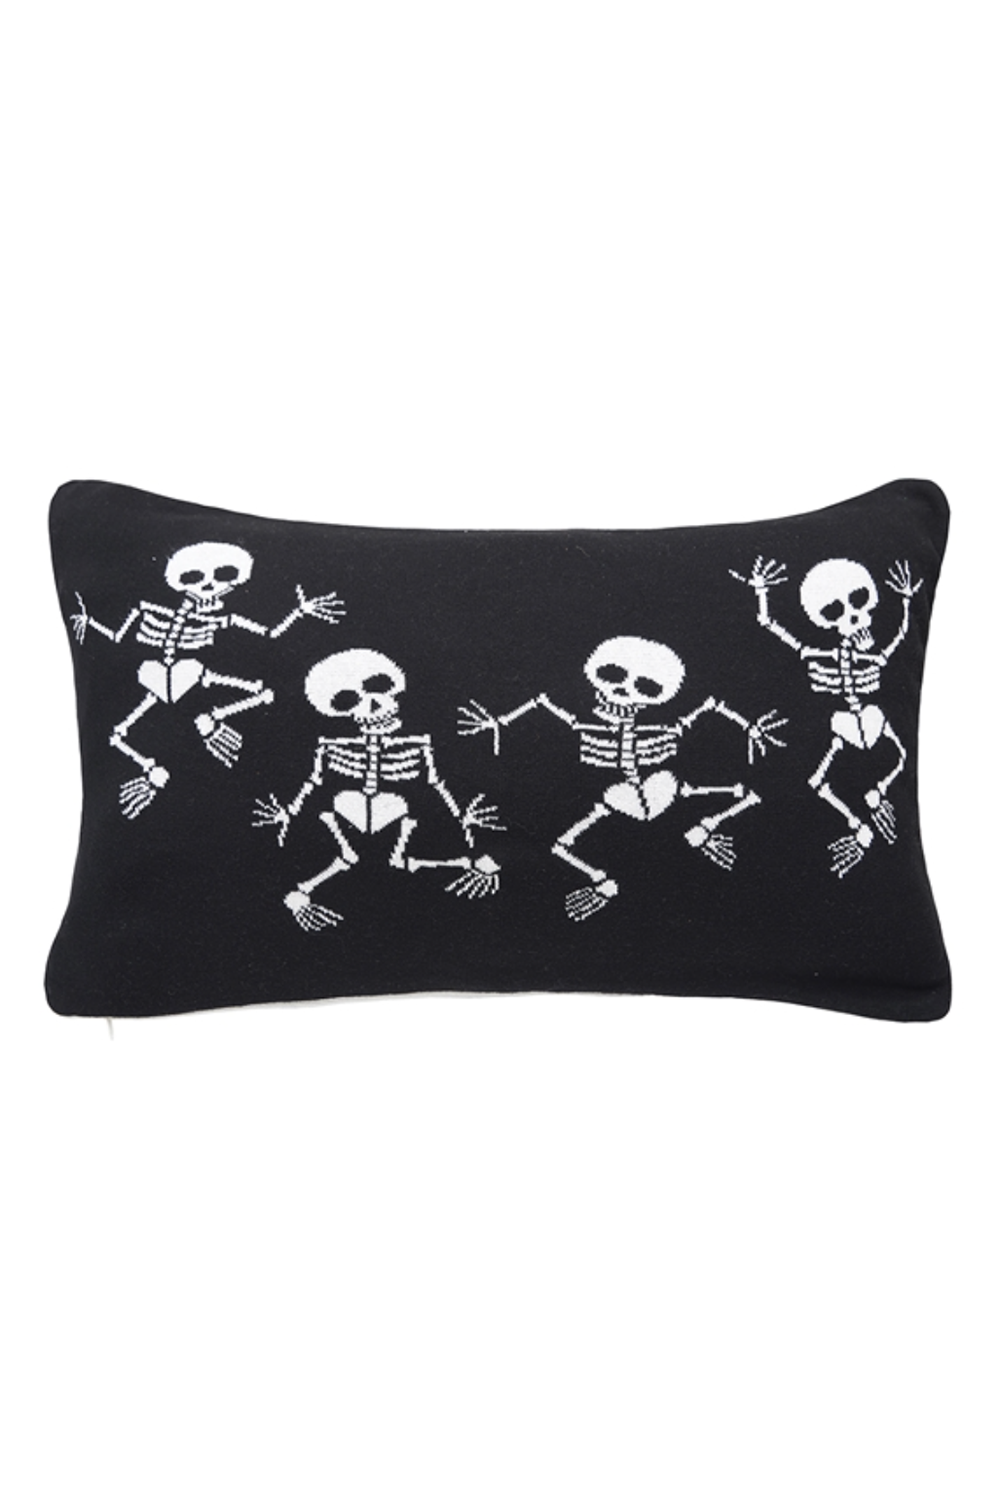 Halloween Pillow - Dancing Skeletons